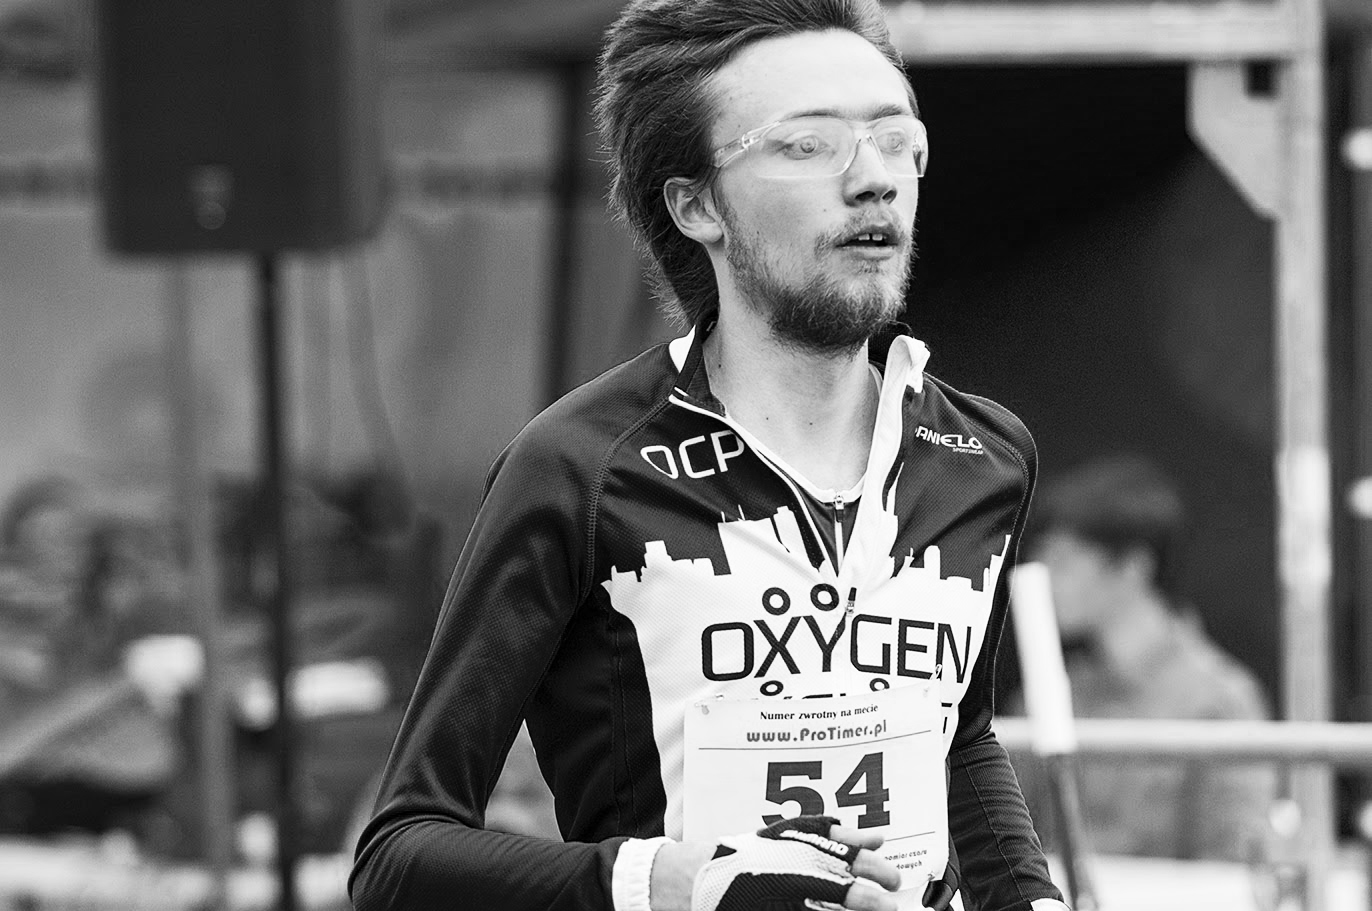 OXYGEN-sekcja-biegowa-rowerowa-indoor-cycling-running-trening-zawoy-Makow-Mazowiecki-2015-duathlon-wyscik-wygrana-zwyciestwo-MILUNA-Ewa-Milun-Walczak-5